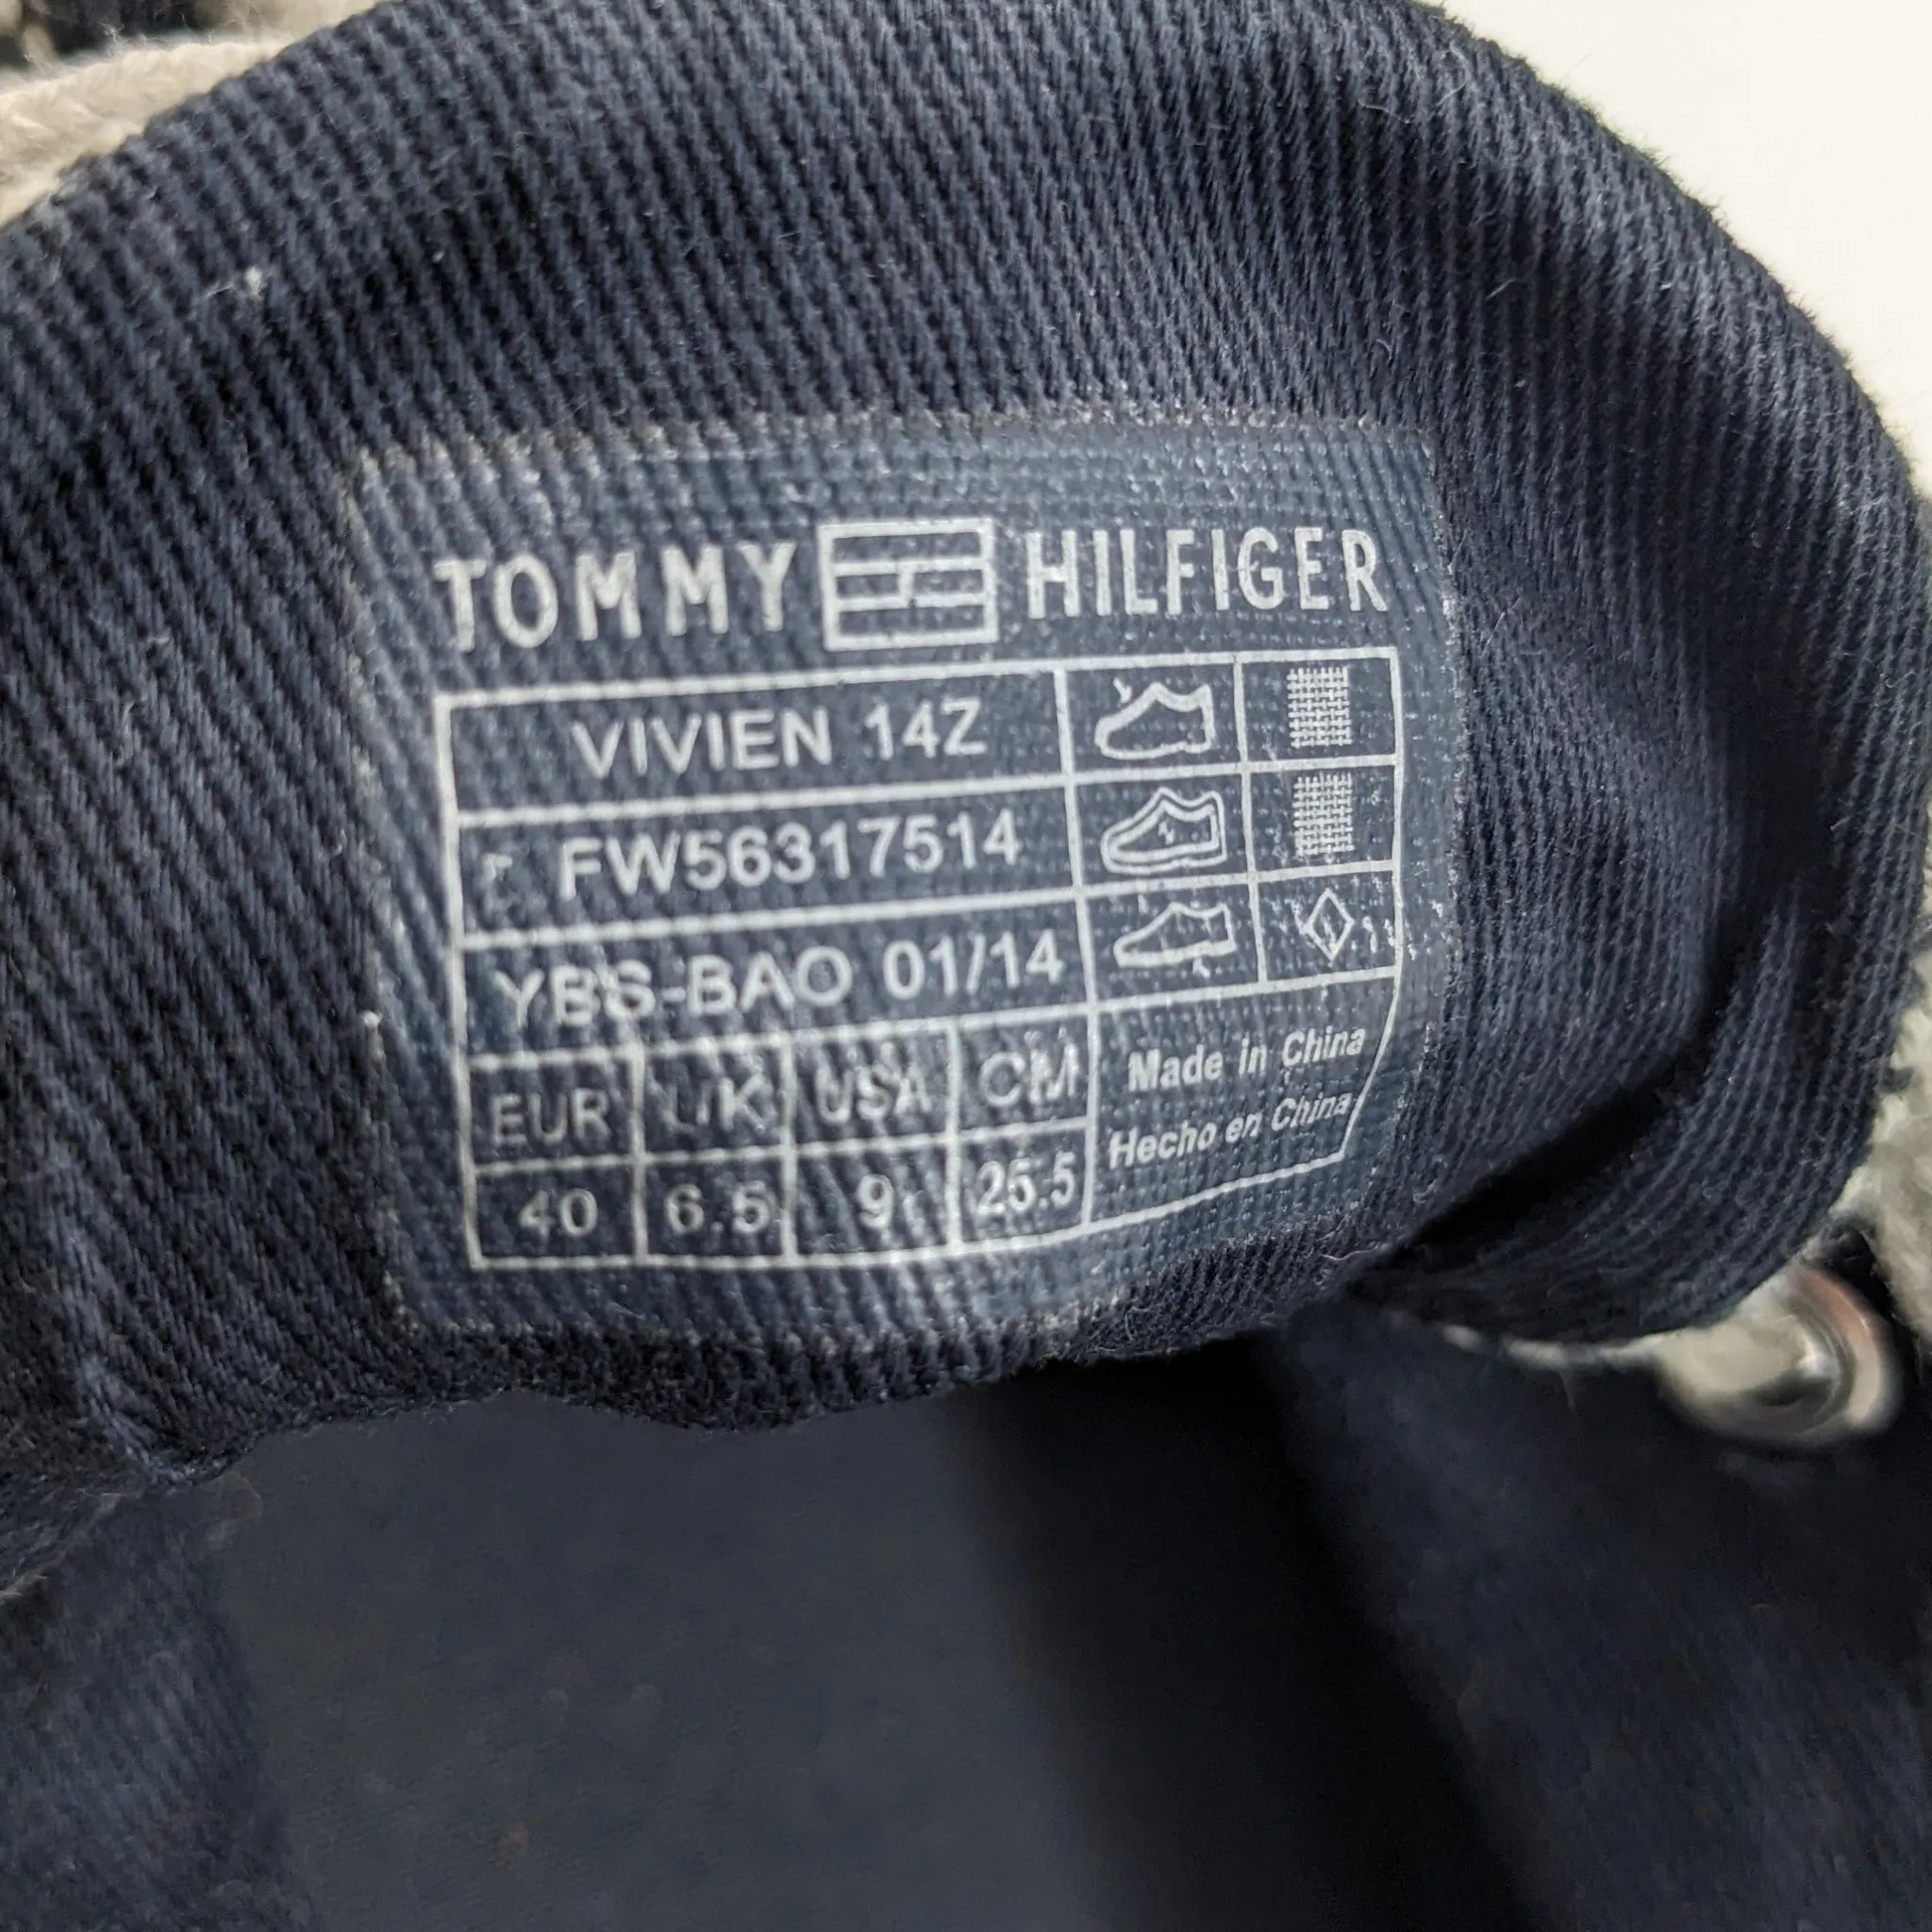 أحذية تومي هيلفيغر الرياضية